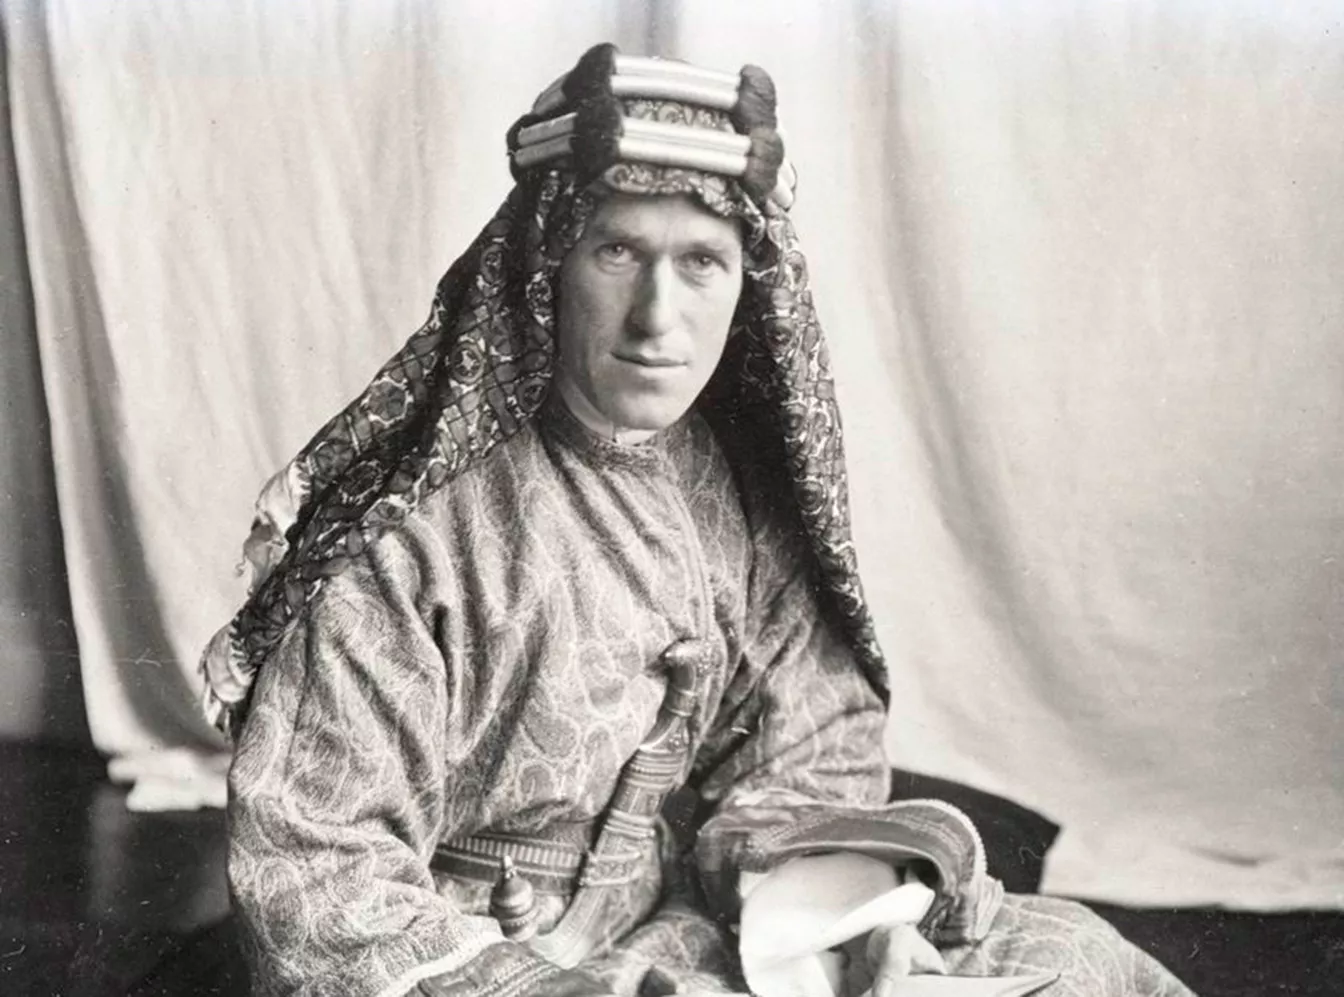 Lawrence va adoptar de seguida la indumentària beduïna, per comoditat però també per respecte a la cultura dels seus aliats del desert